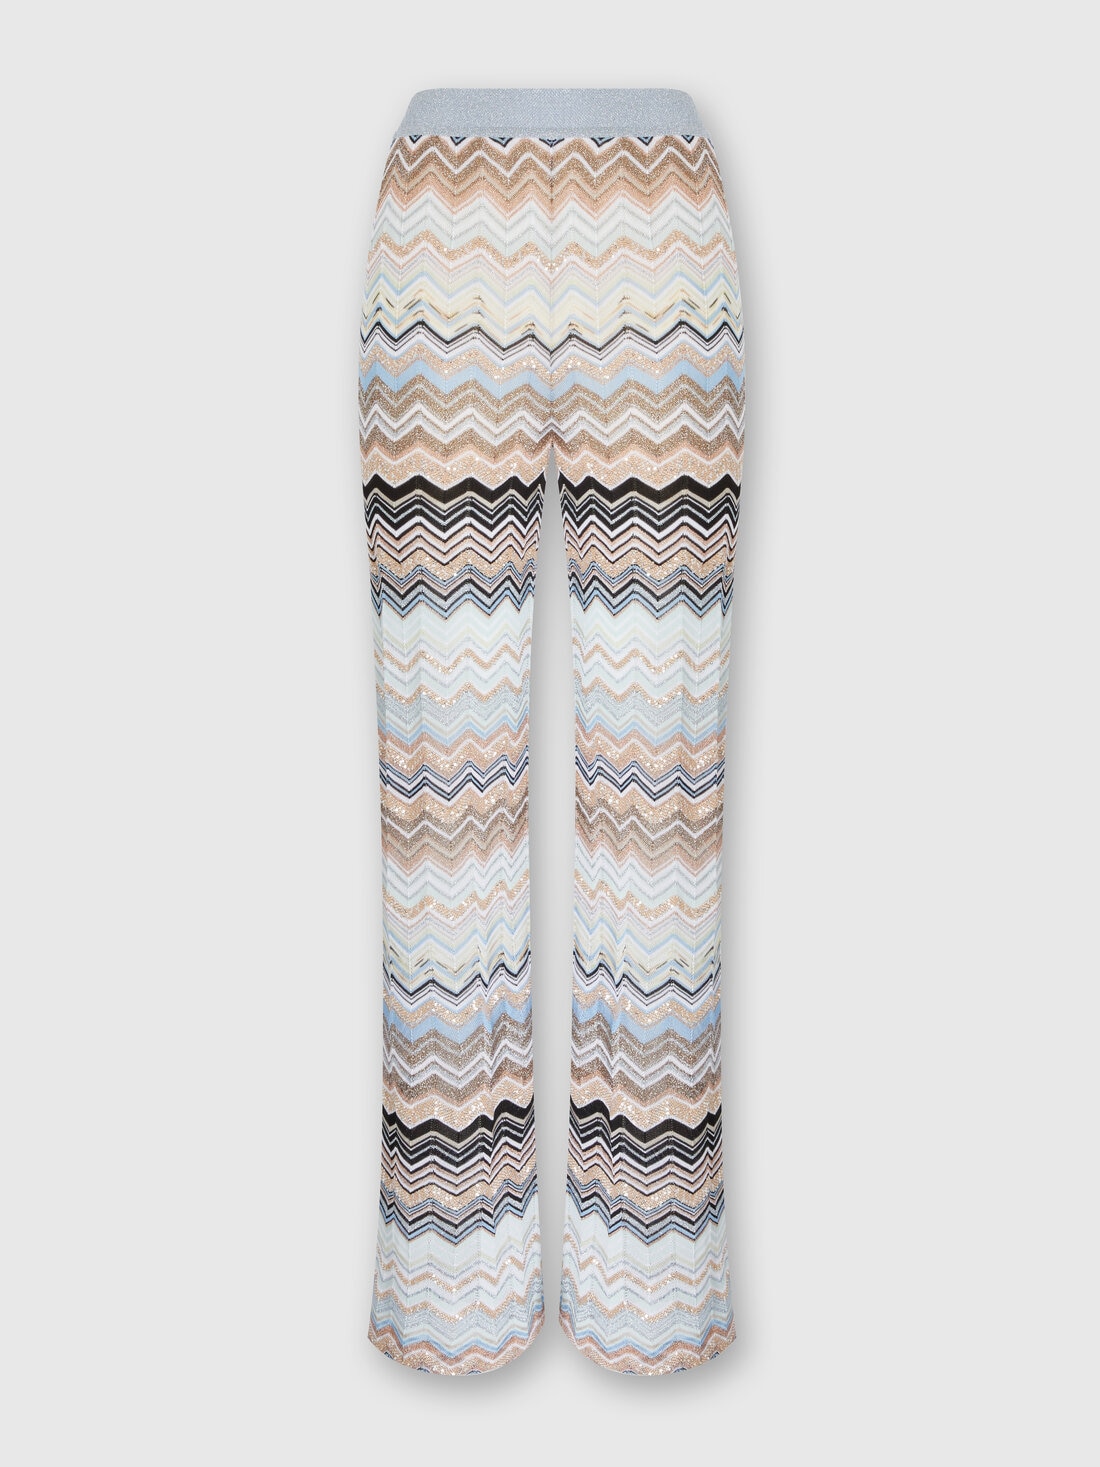 Chevron lamé knit trousers with sequins, Multicoloured  - DS24SI1QBK039DSM9EG - 0